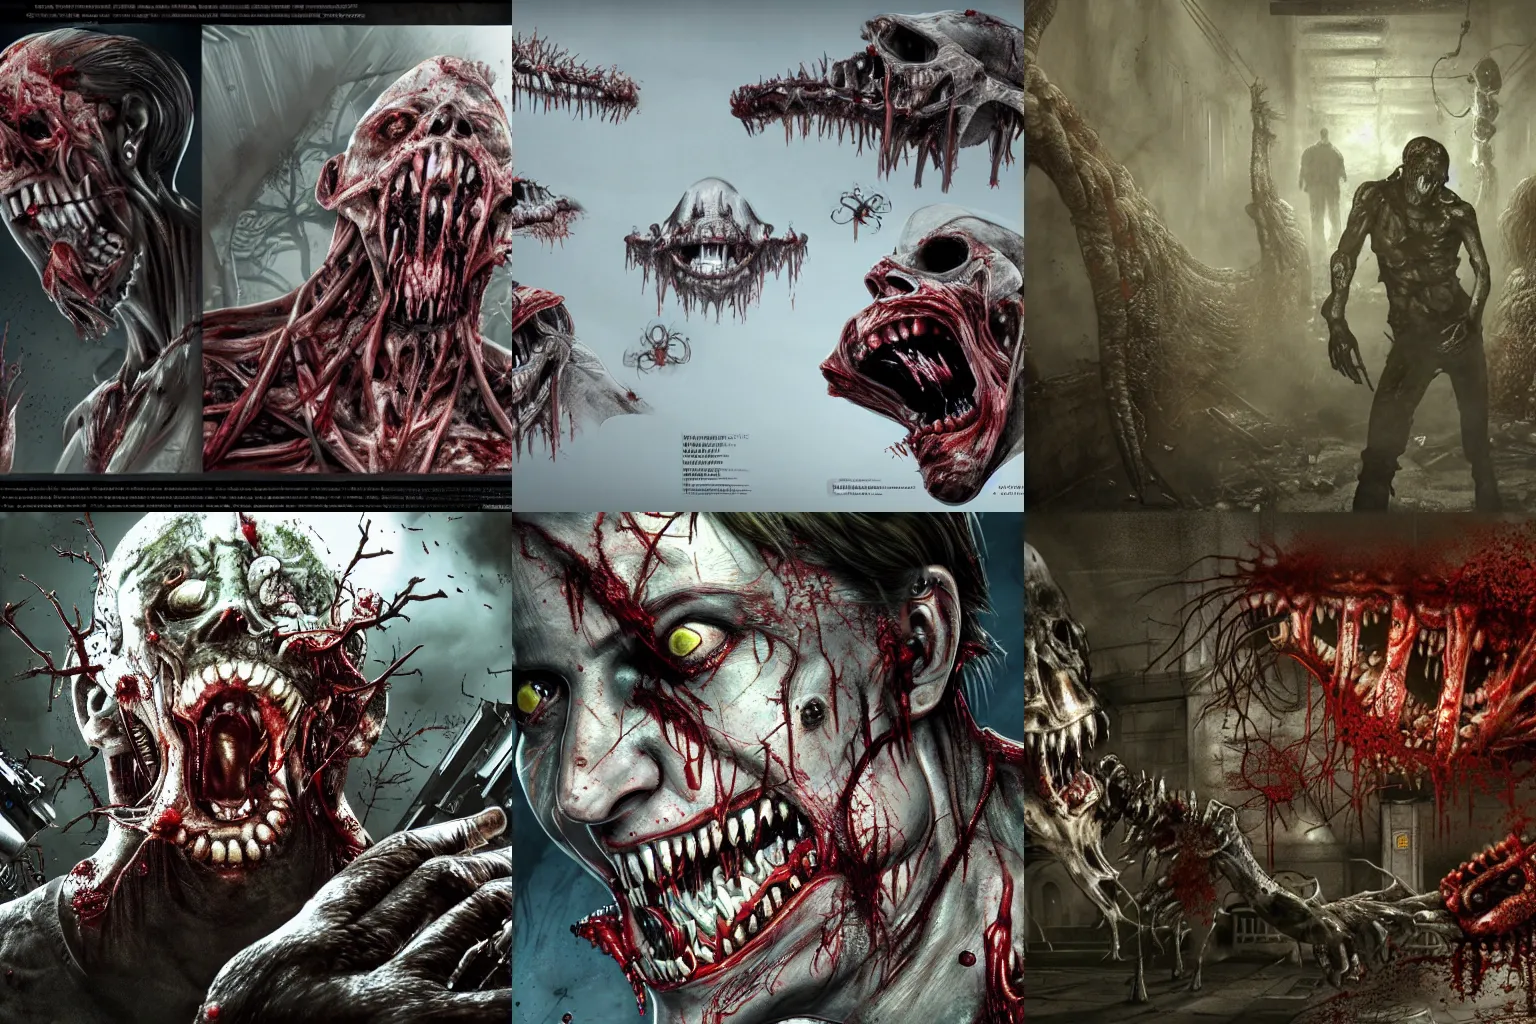 Image similar to Resident Evil virus concept art, nasty, vile, disgusting, rotten, putrid, highly detailed, horror, scary, terrifying, horrific, hd 4k